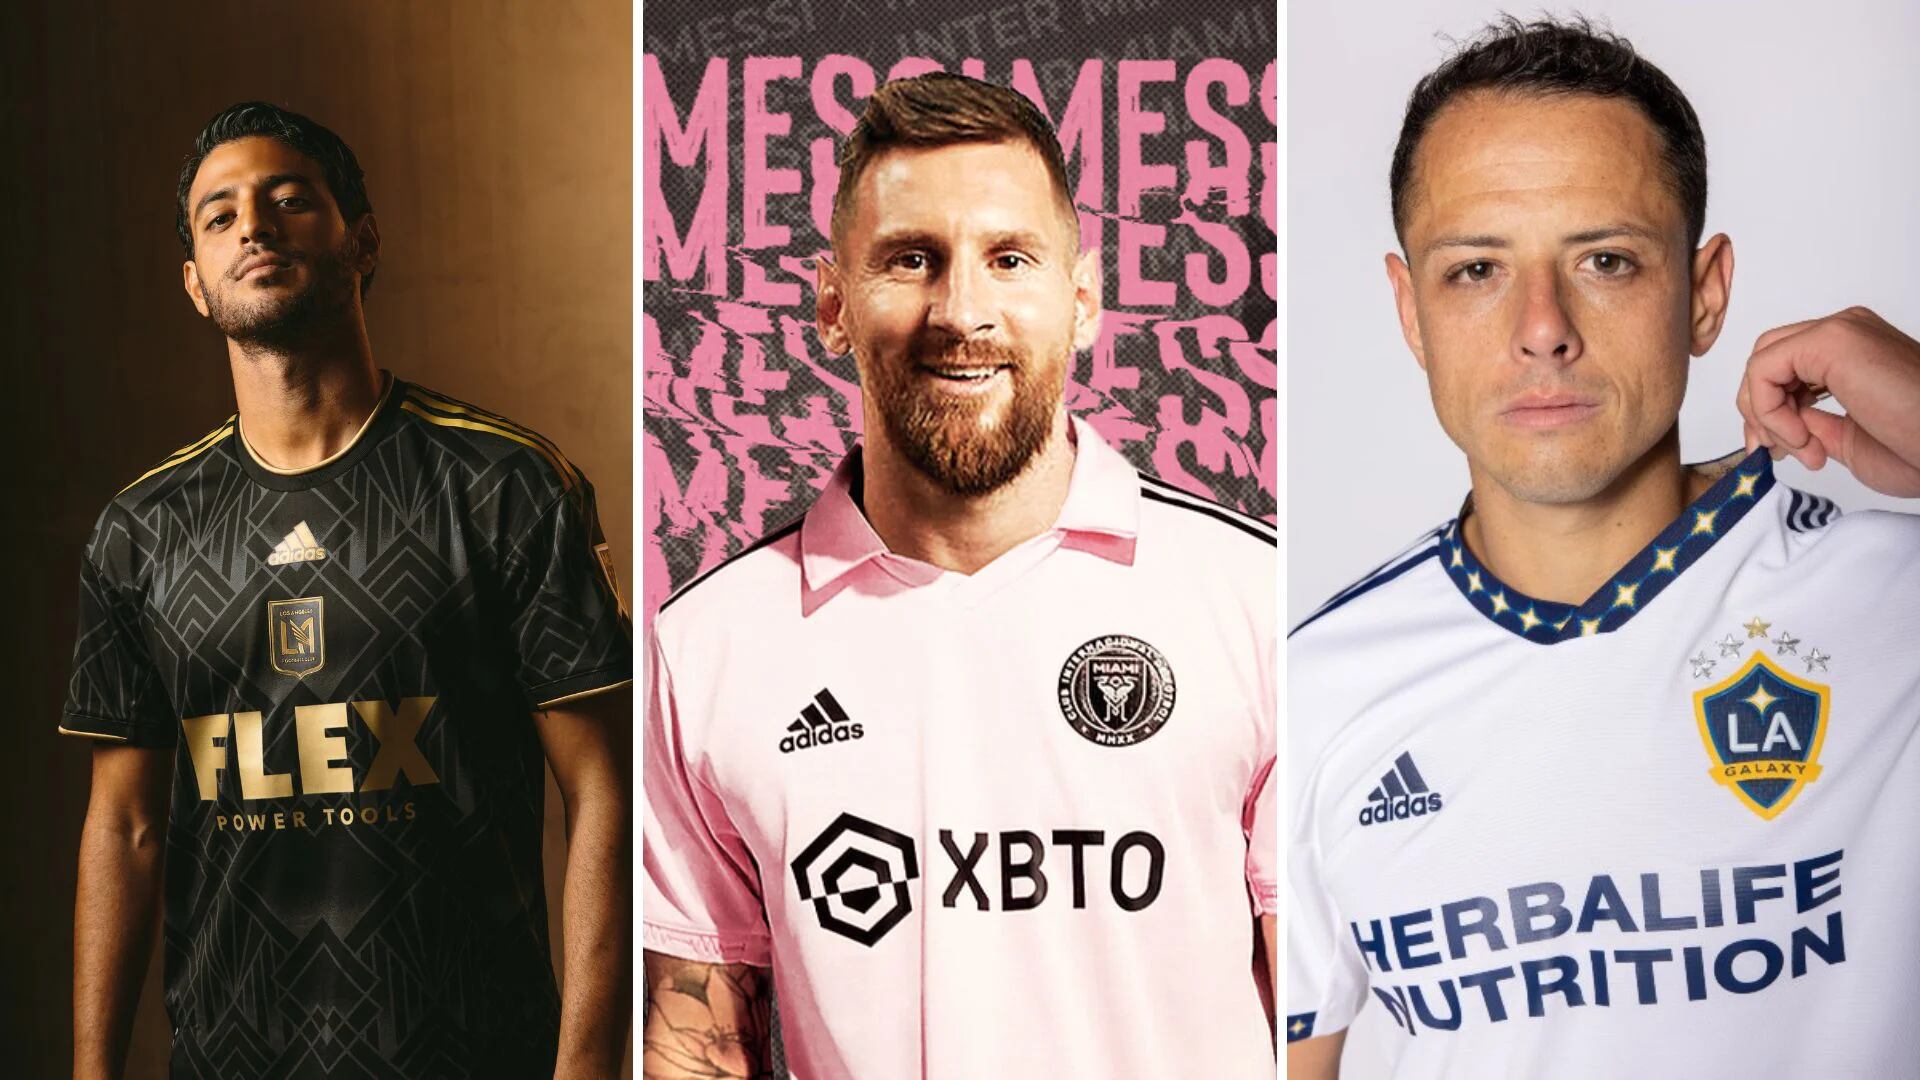 Playera de Messi, la más vendida en la MLS; un mexicano logró colarse en el Top 5